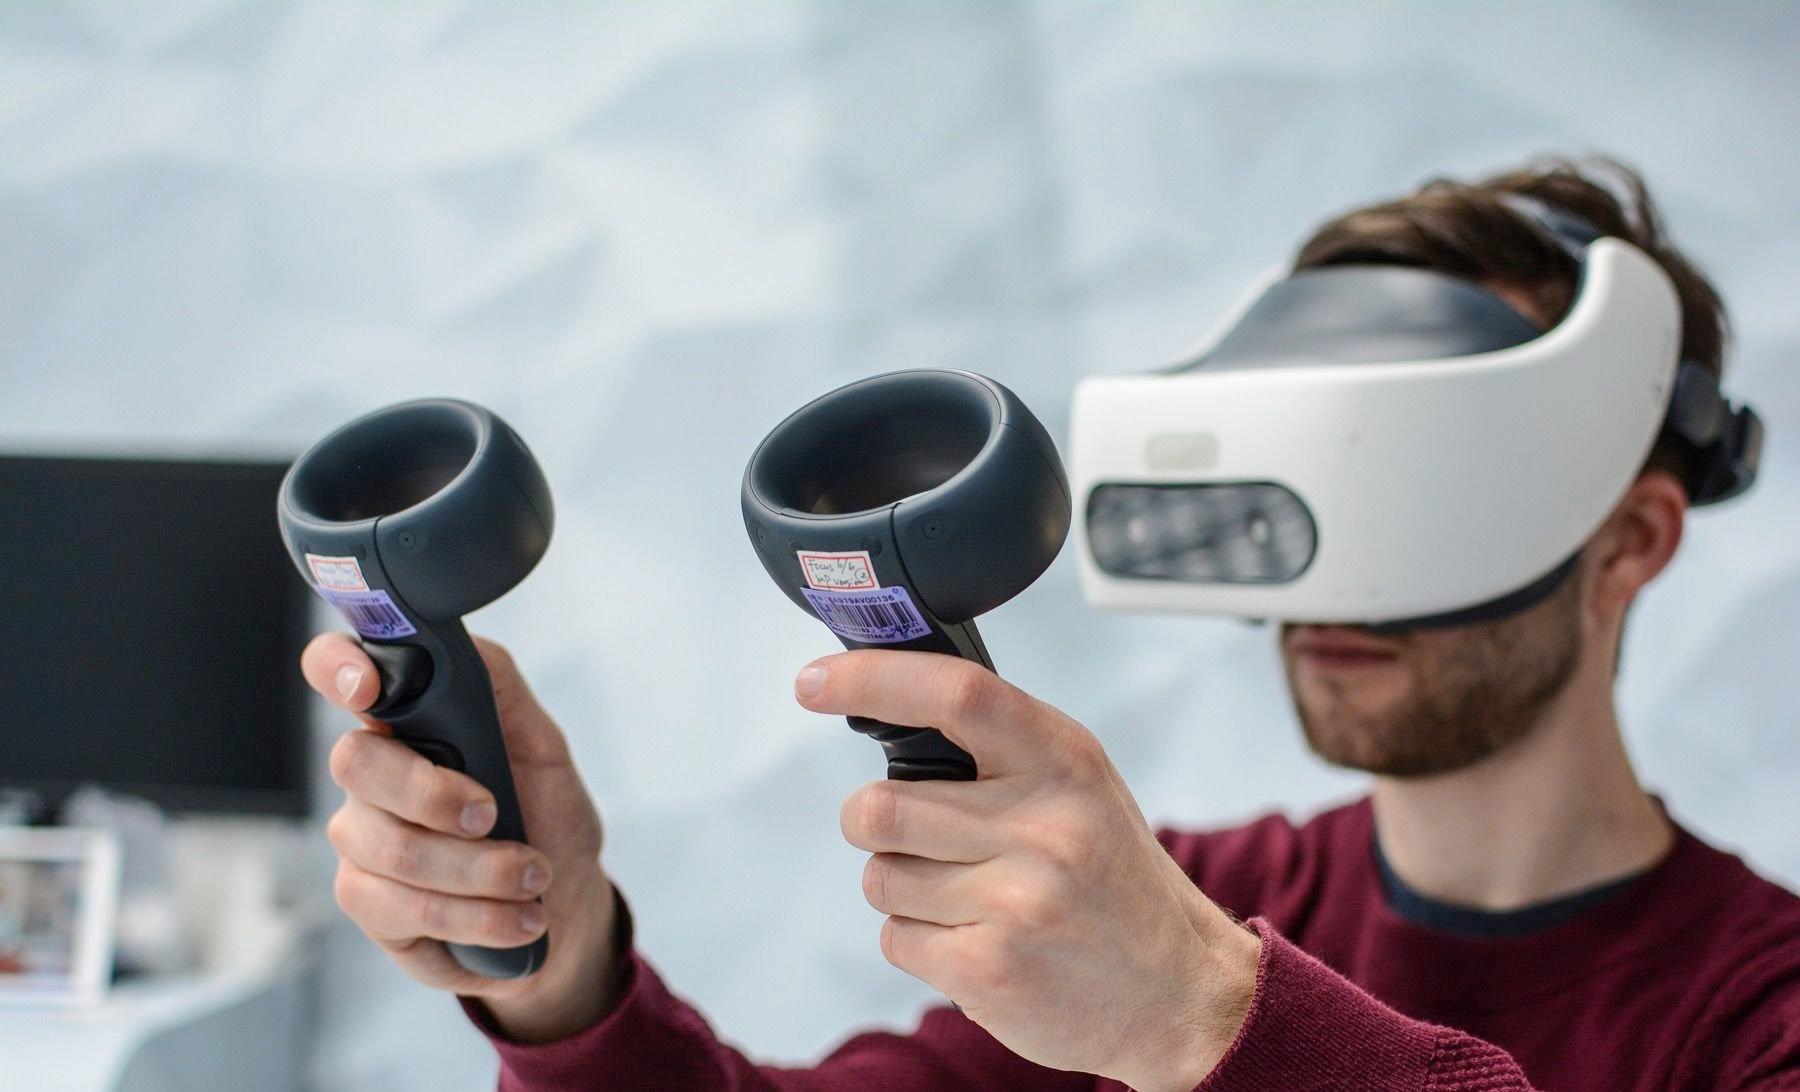 Bộ kính thực tế ảo HTC Vive Focus Plus có độ phân giải cao